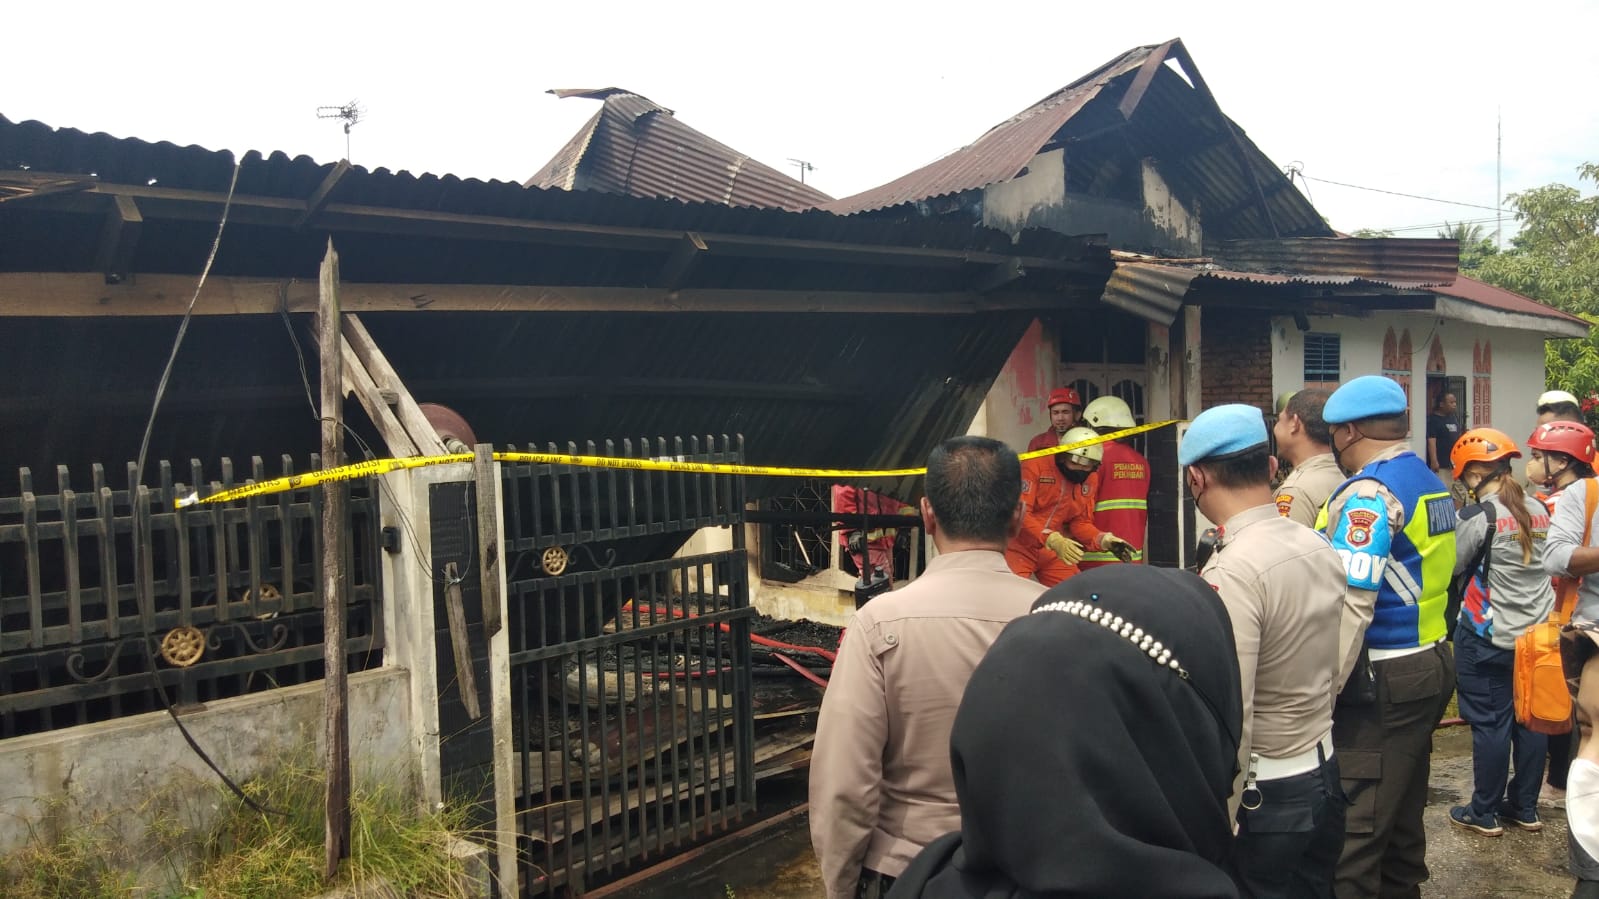 Rumah Dilalap Sijago Merah, Pria Paruh Baya Tewas Terbakar